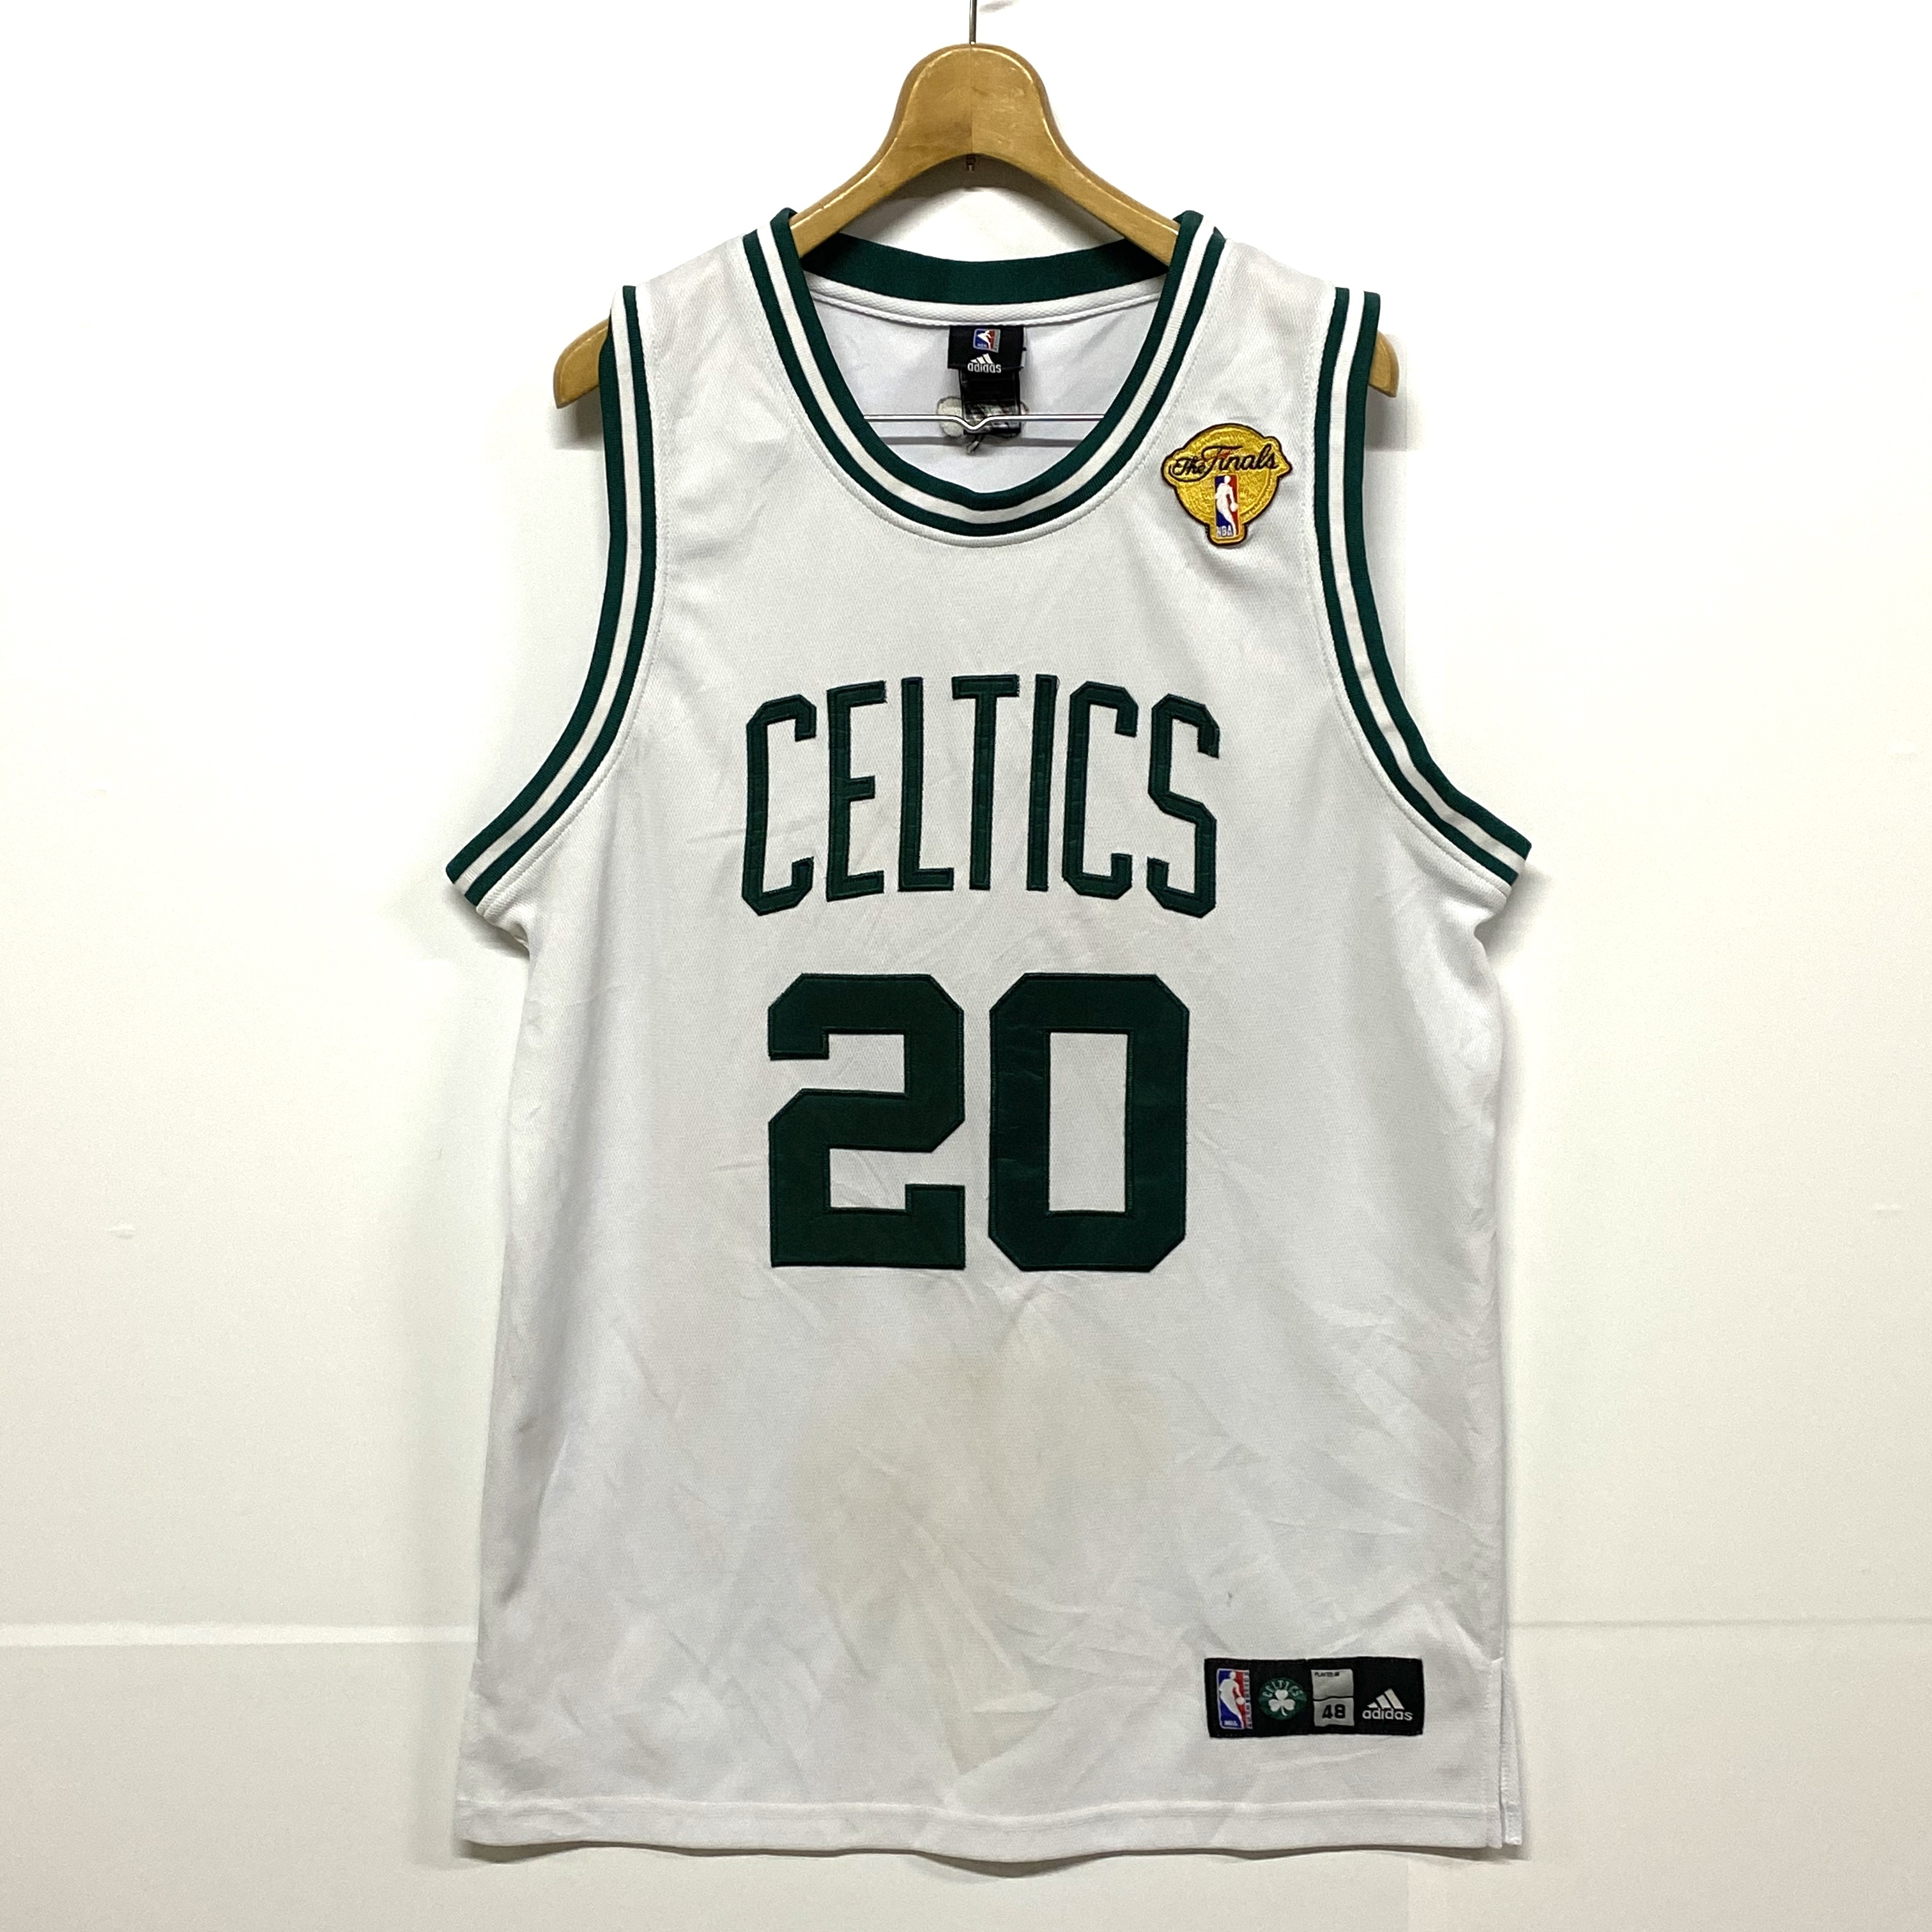 アディダス Adidas Nba Boston Celtics ボストンセルティックス Ray Allen レイ アレン ゲームシャツ レプリカ ユニフォーム 古着 ゲームシャツ Cave 古着屋 公式 古着通販サイト All Off開催中